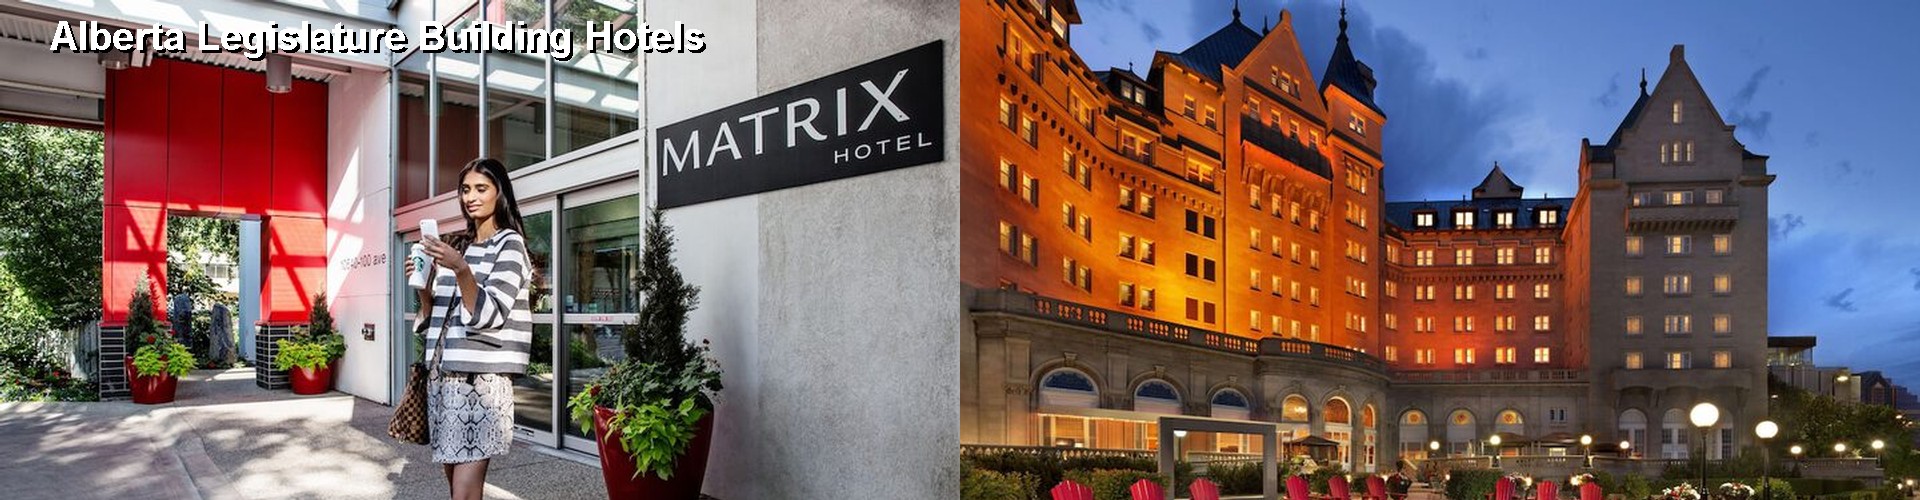 5 Best Hotels near Alberta Legislature Building